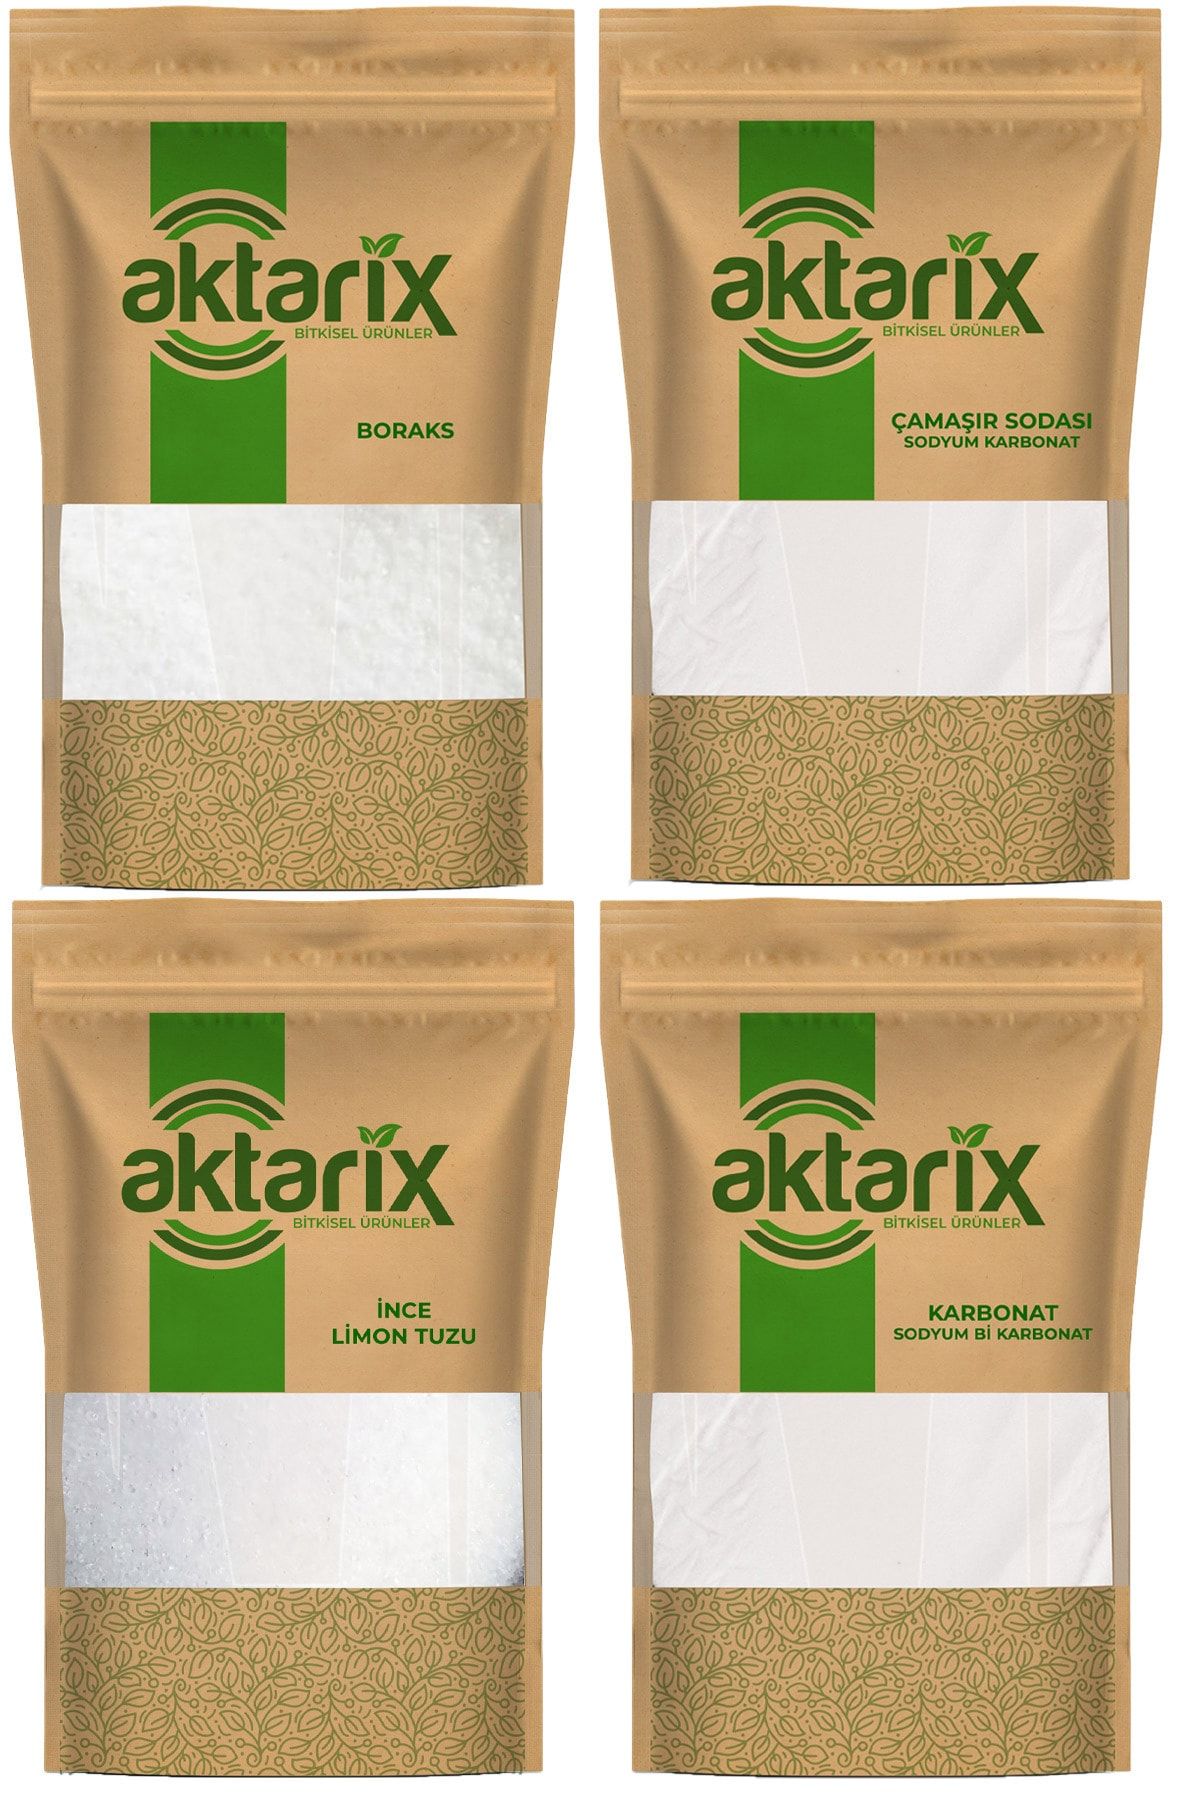 aktarix Boraks 5 Kg + Çamaşır Sodası 5 Kg + Karbonat 5 Kg + 1 Kg Limon Tuzu Doğal Temizlik